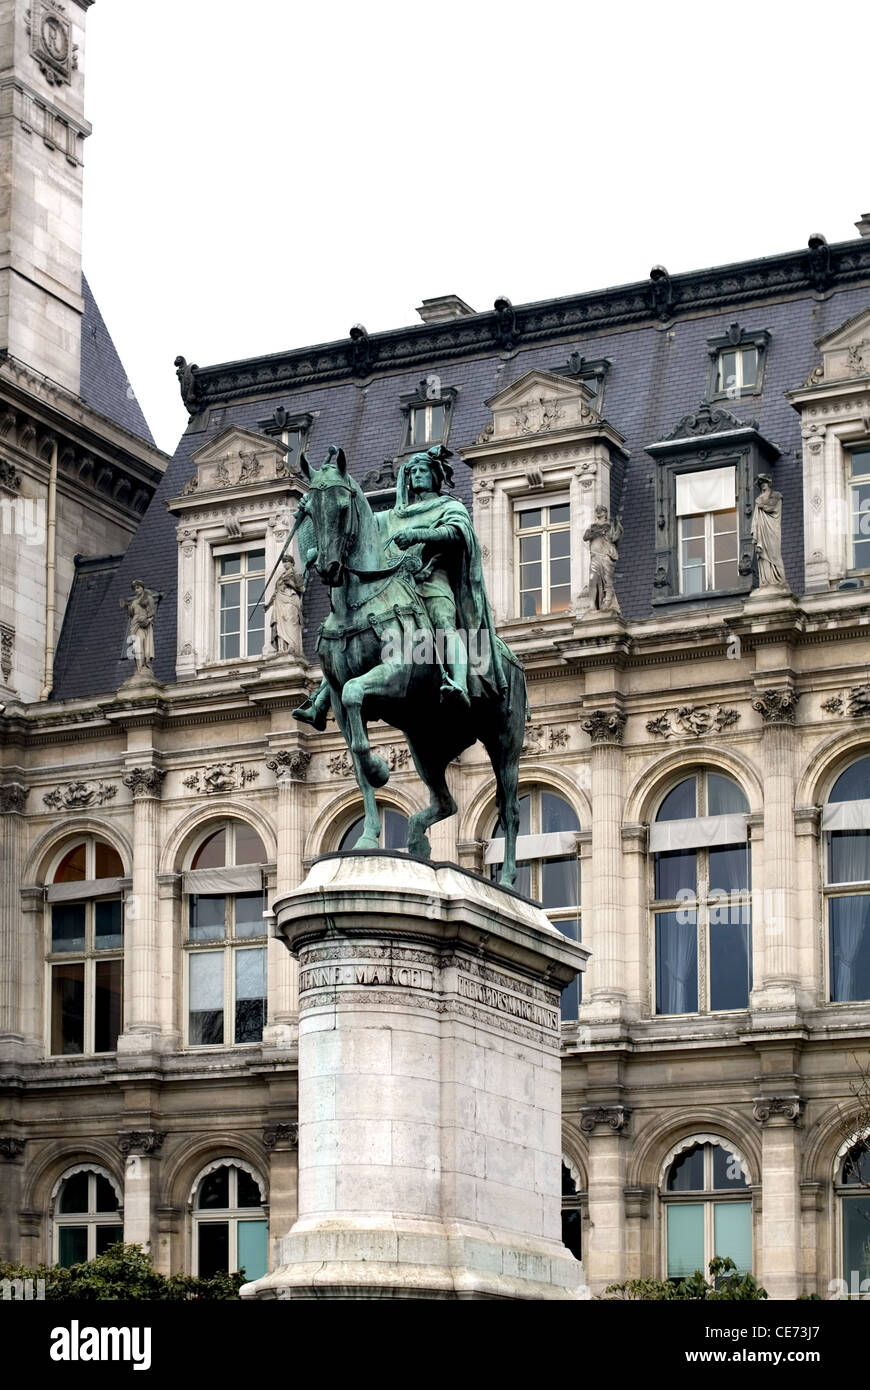 The bronze statue of Etienne Marcel, outside the Hotel de Ville, Paris, France Stock Photo